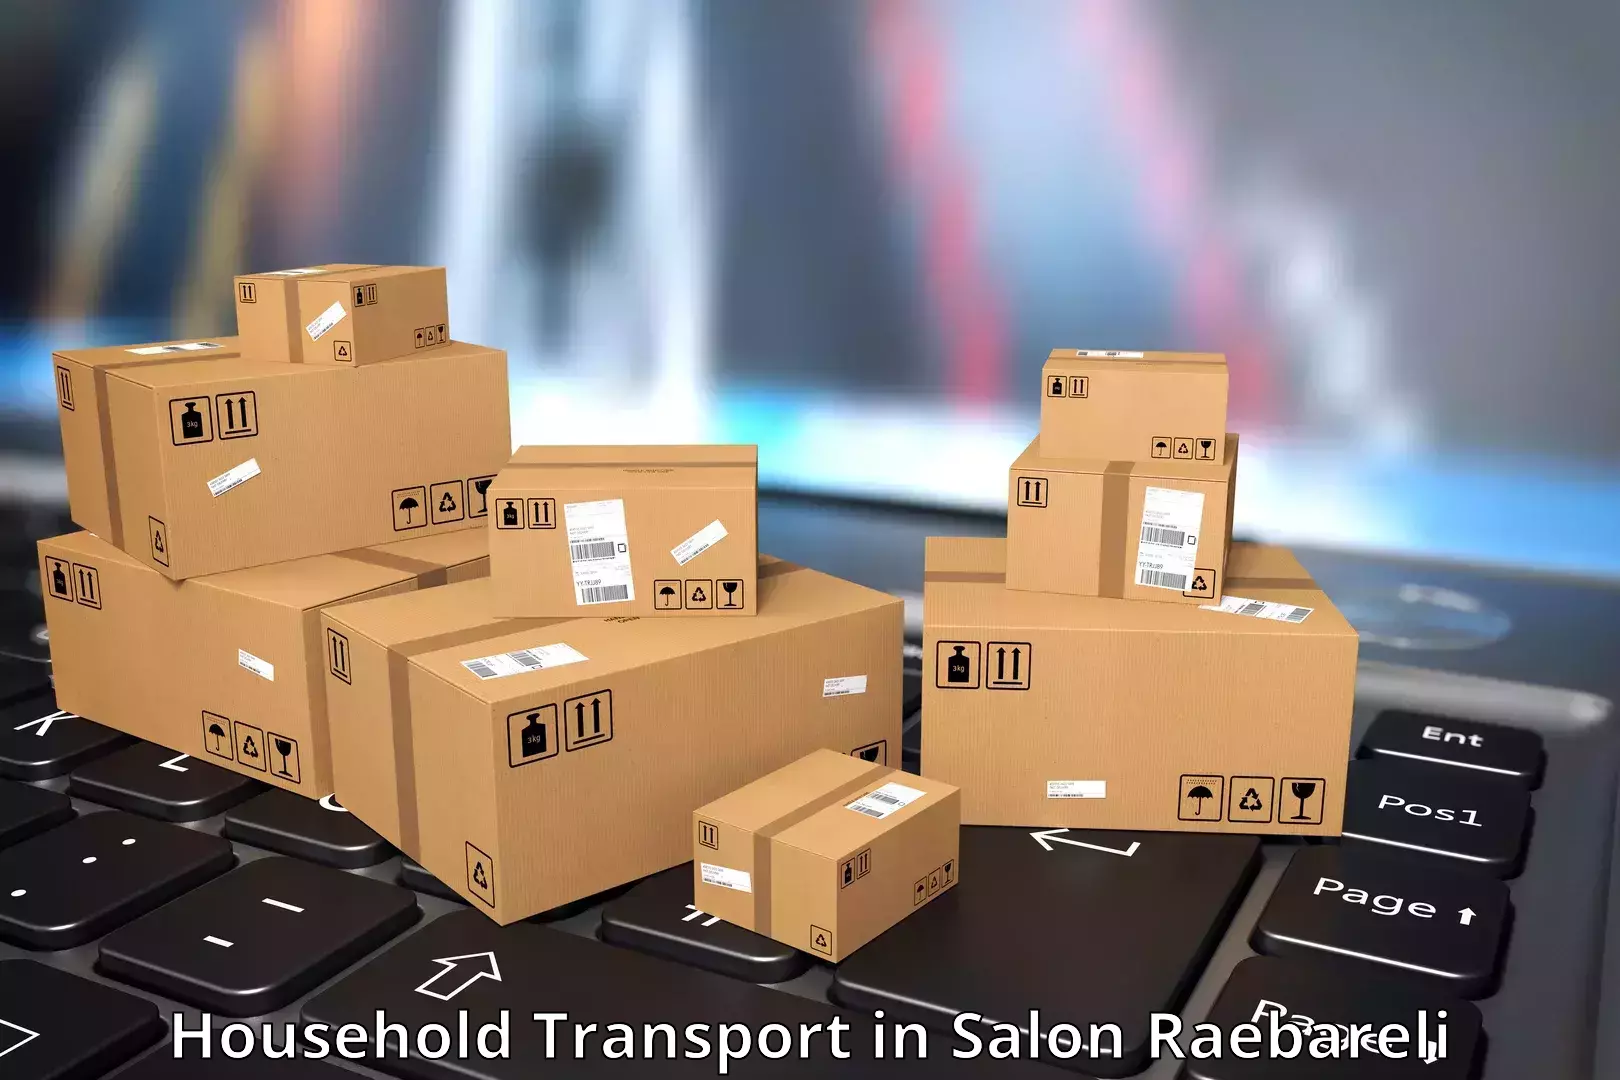 Household goods transporters in Salon Raebareli